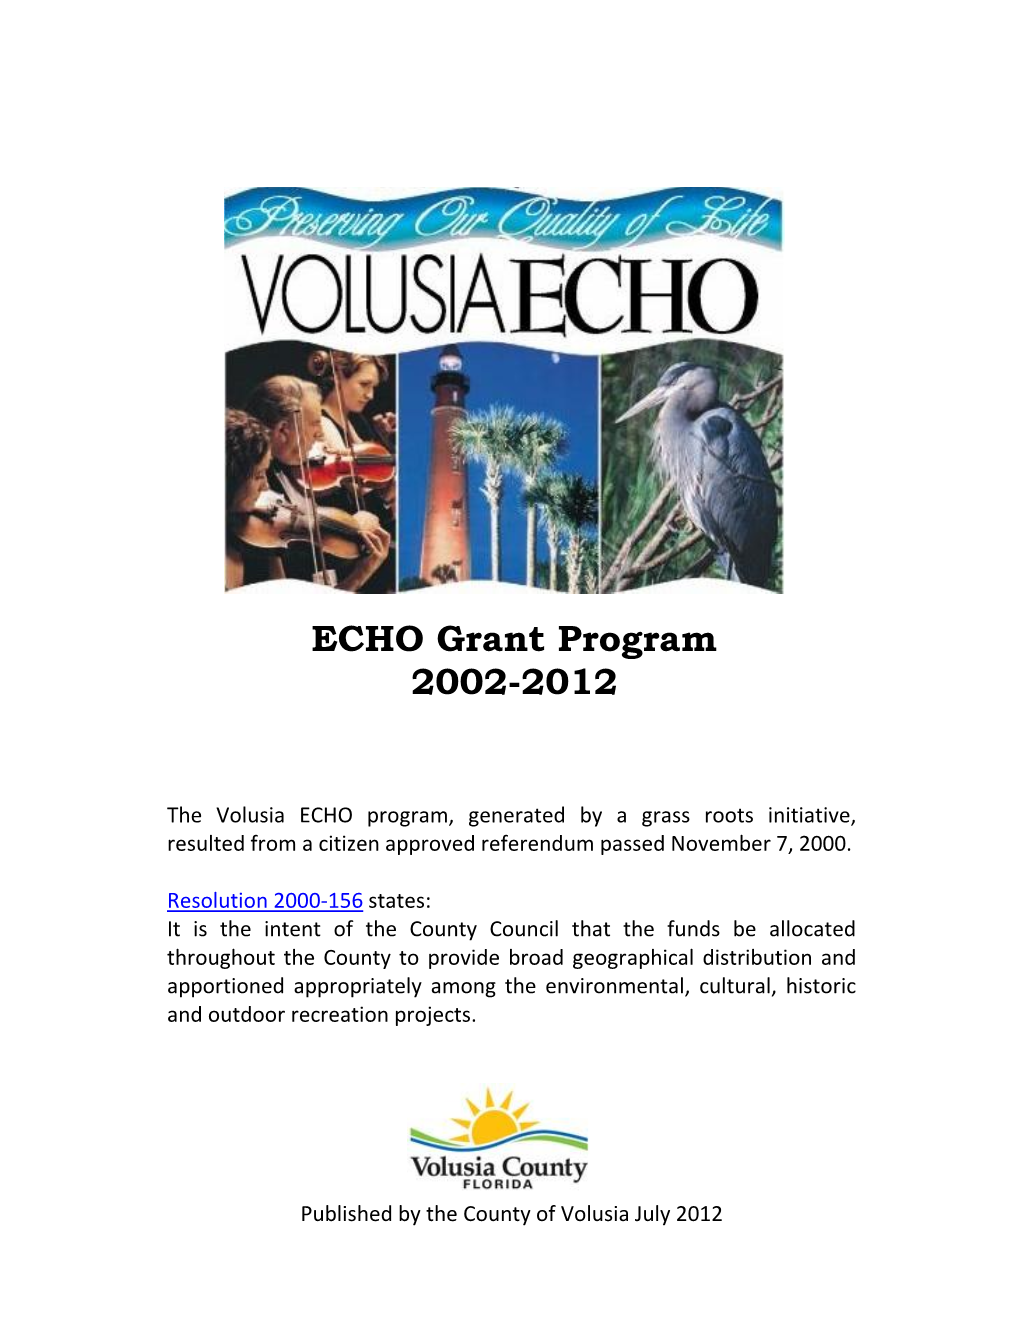 ECHO Grant Program 2002-2012